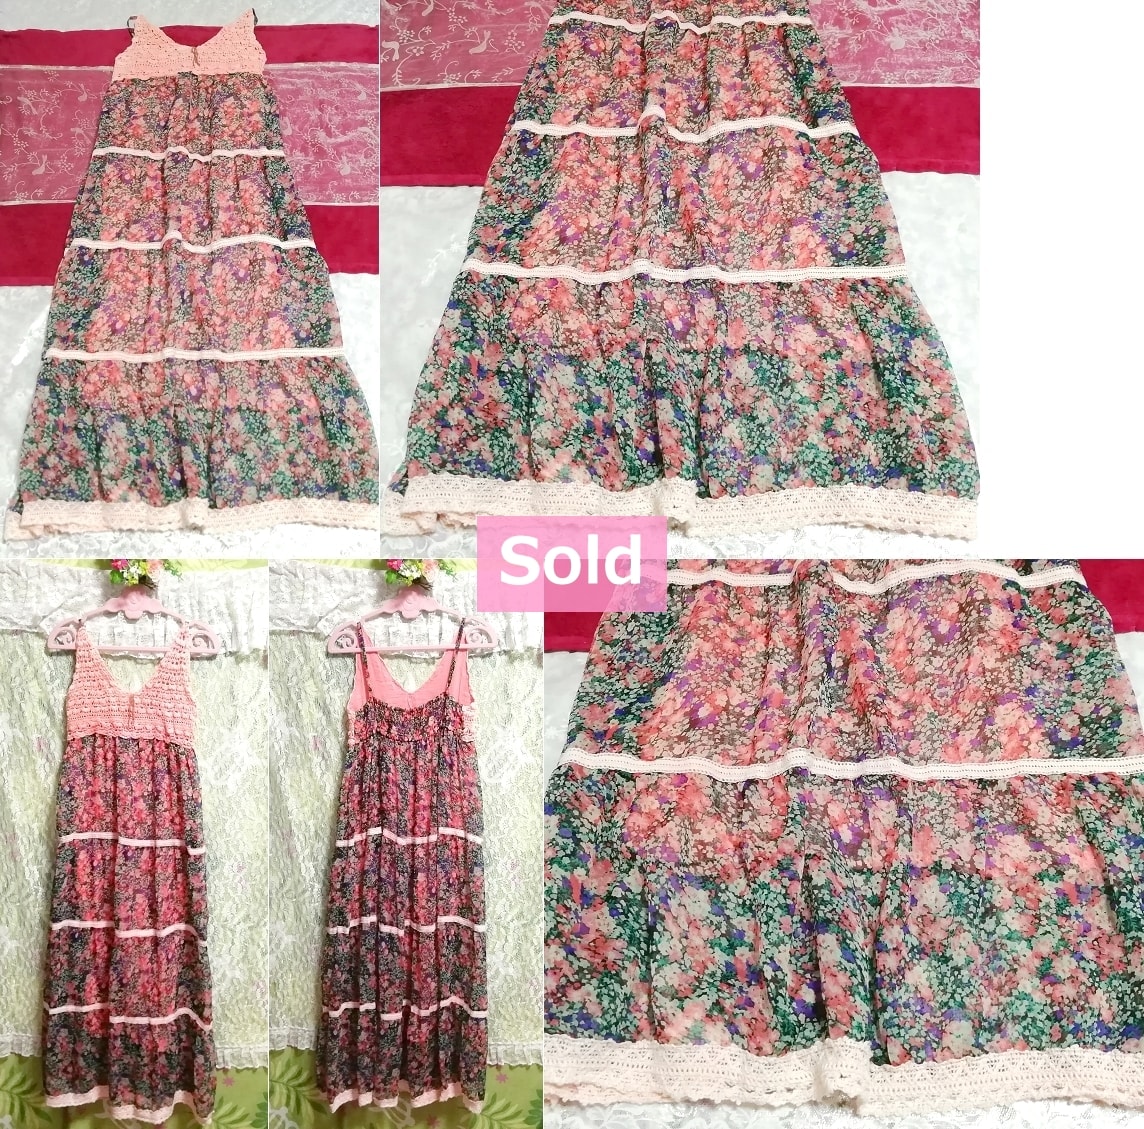 インド製ピンクレース花柄シフォンロングスカートマキシワンピース Indian made pink lace floral chiffon long skirt maxi onepiece